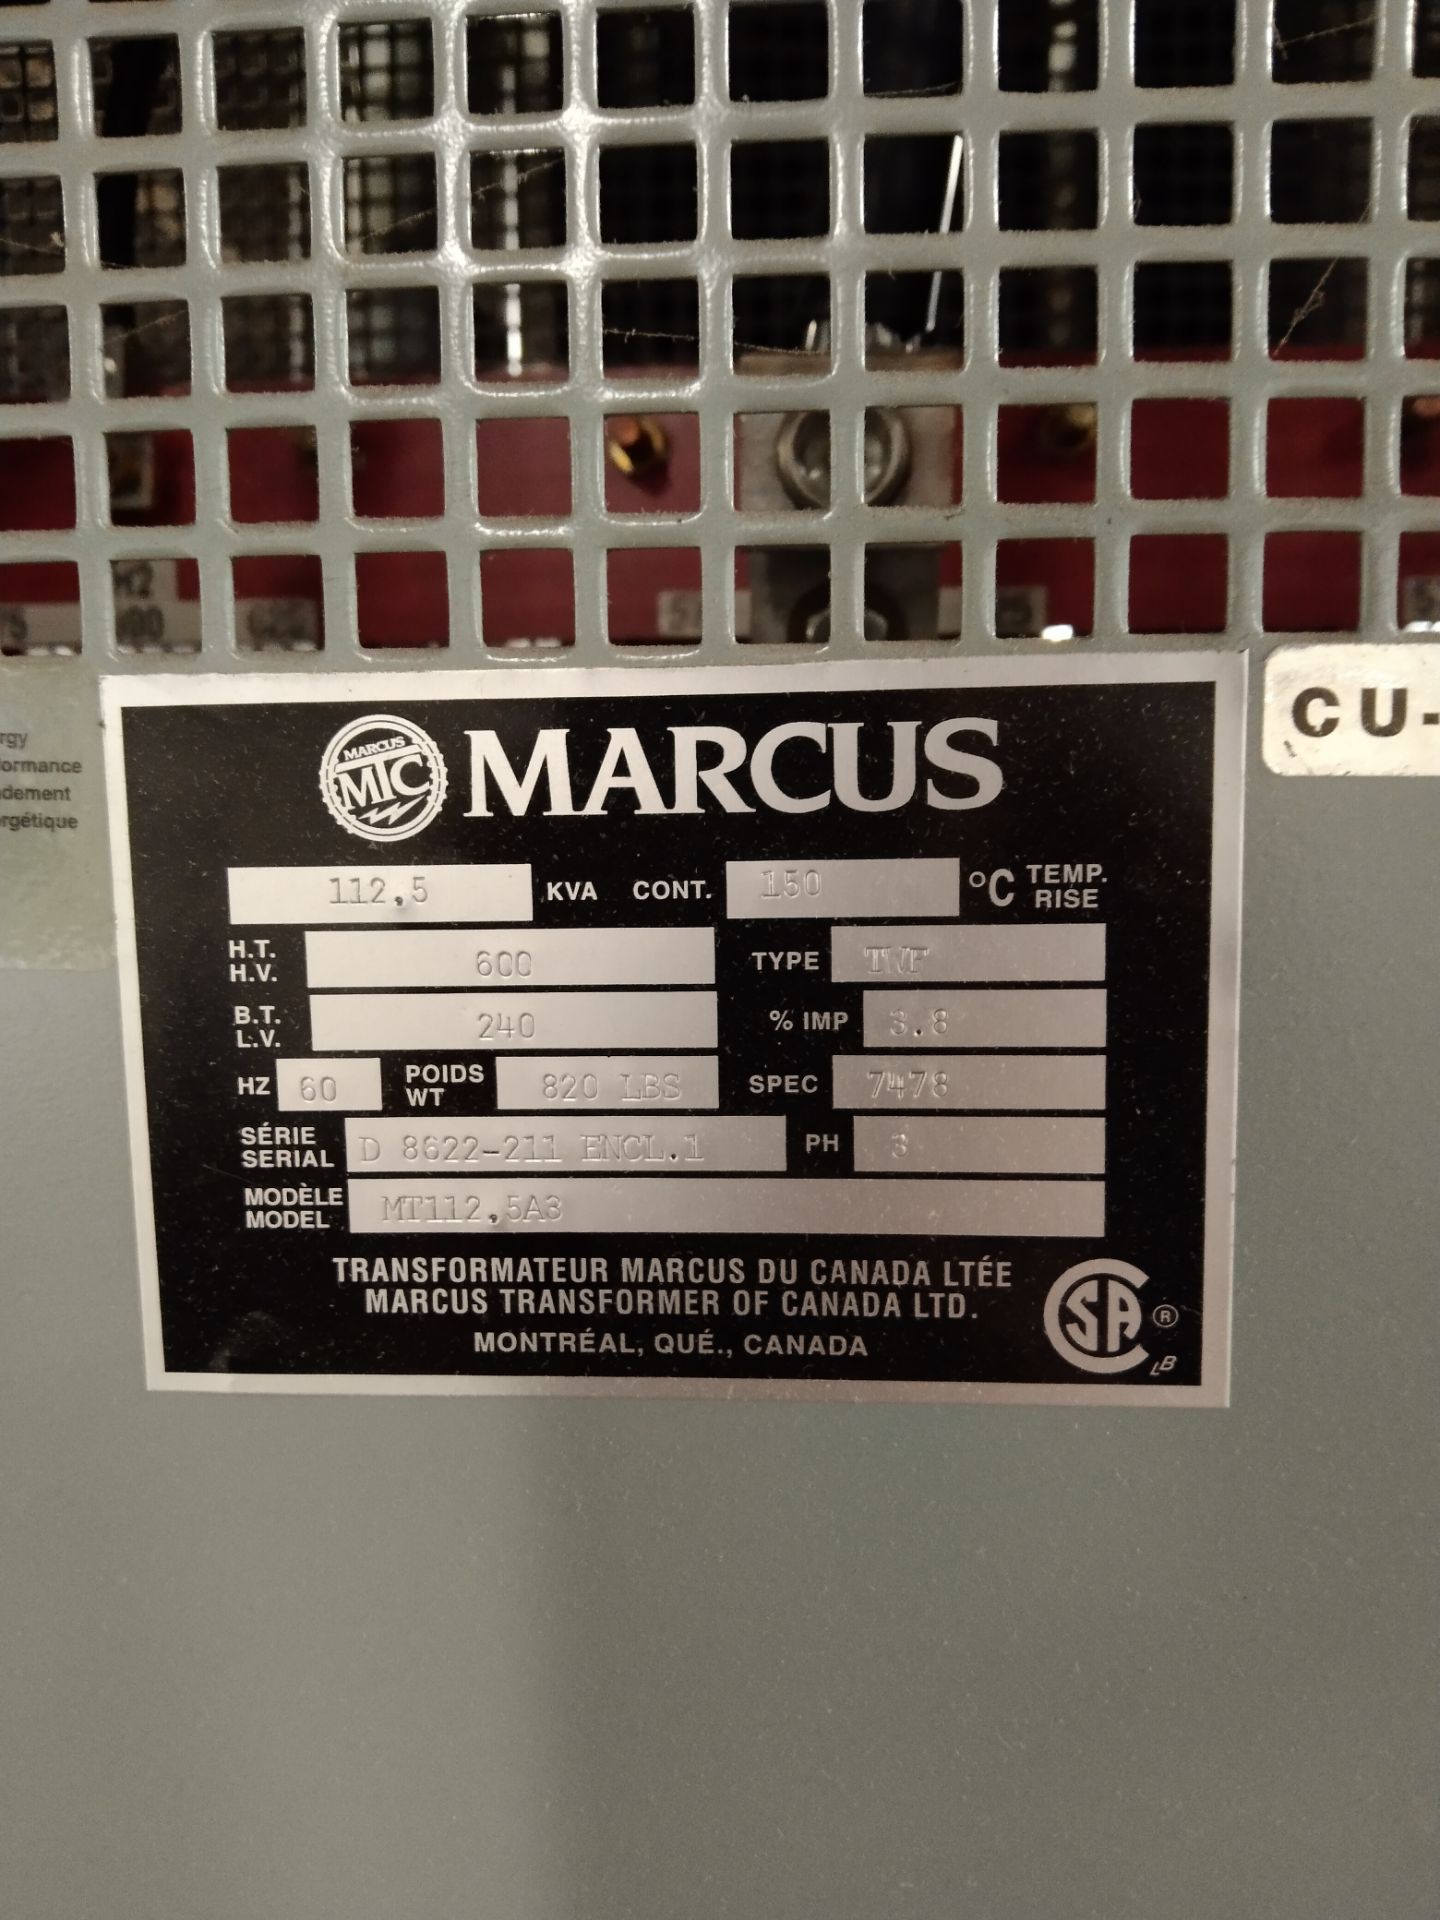 Marcus / Transformer / Model: MT112.5A3 / SN: 8622-211 / 600V 112.5 KVA